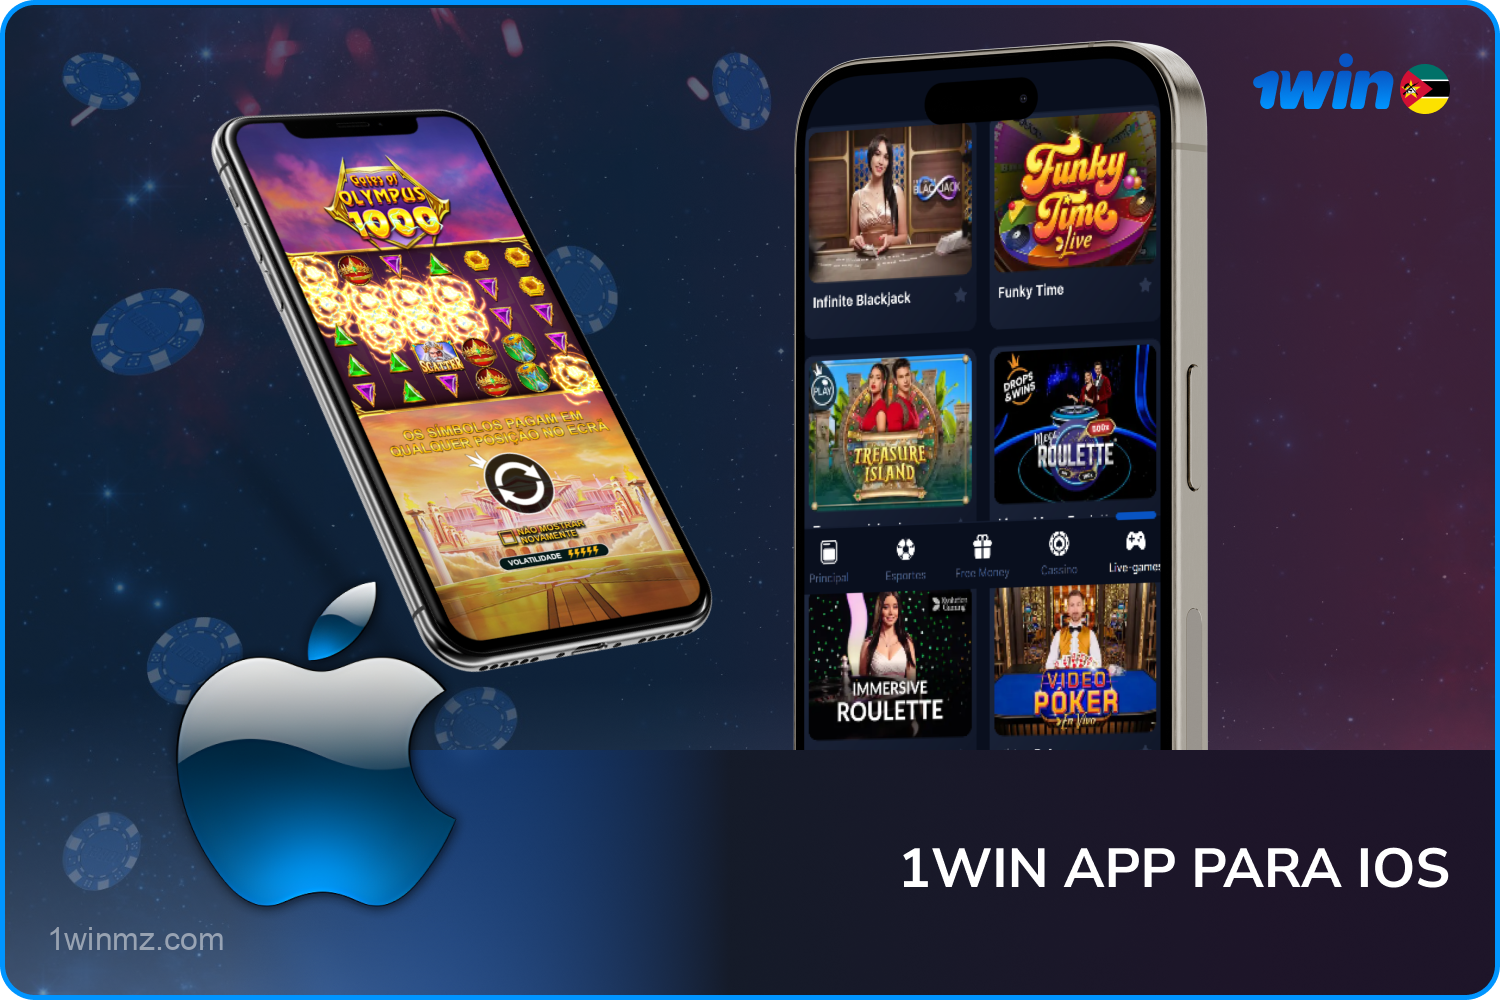 Proprietários de iPhone e iPad têm acesso a um aplicativo móvel 1win conveniente e intuitivo para jogos e apostas esportivas